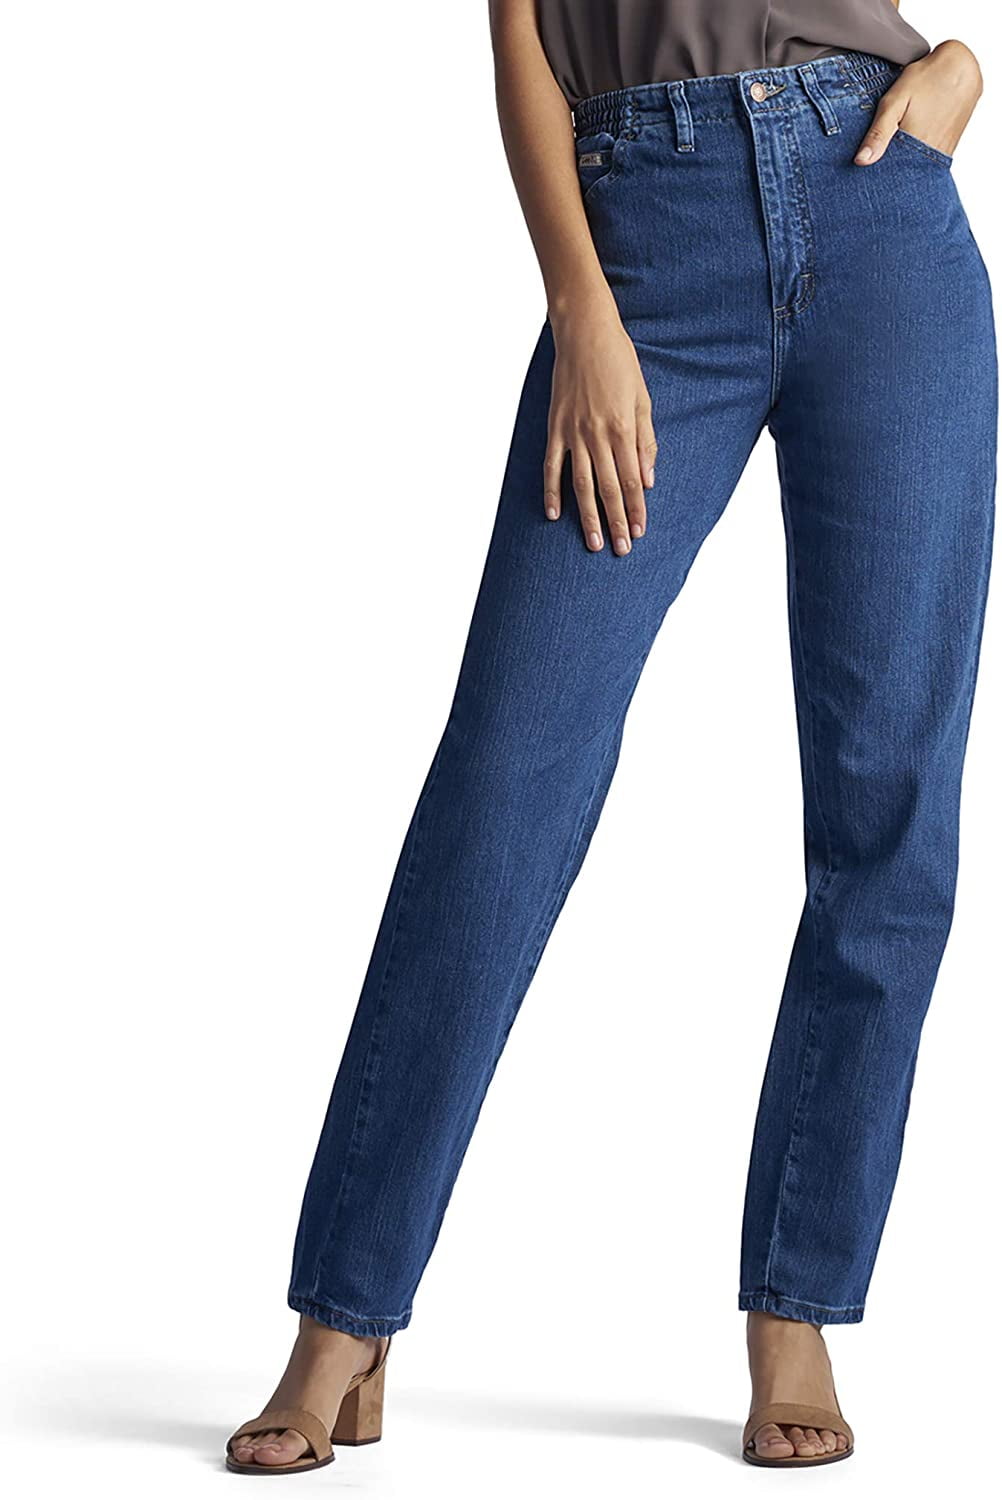 Womens Side Elastic Jean in Pepperstone - Walmart.com